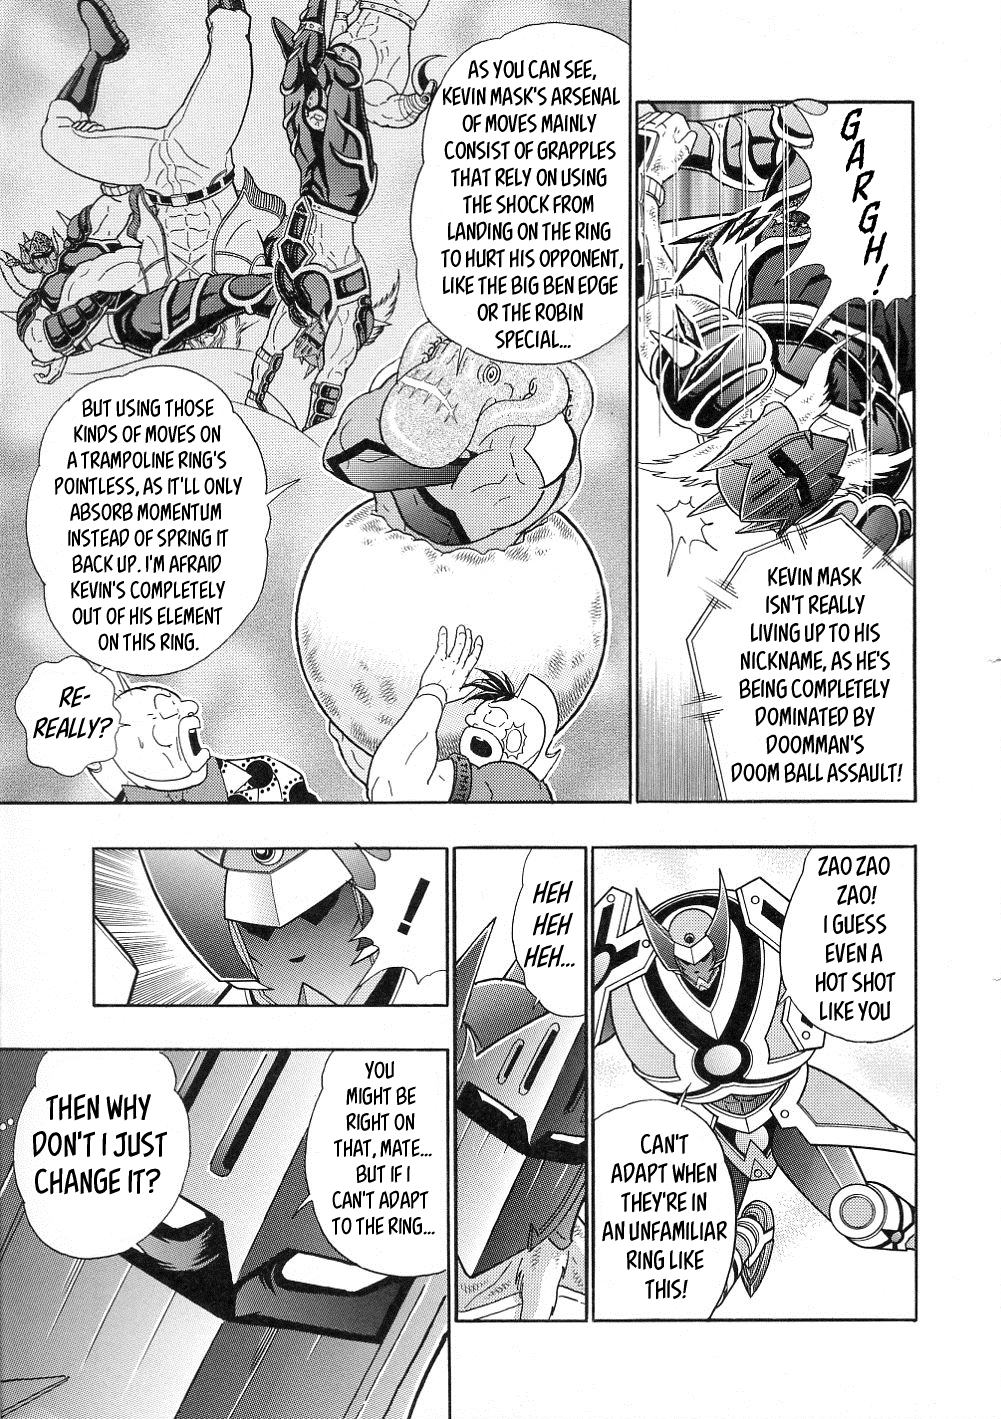 Kinnikuman II Sei: All Choujin Daishingeki Vol. 3 Ch. 36 How Kevin Deals With A Shaking Ring!